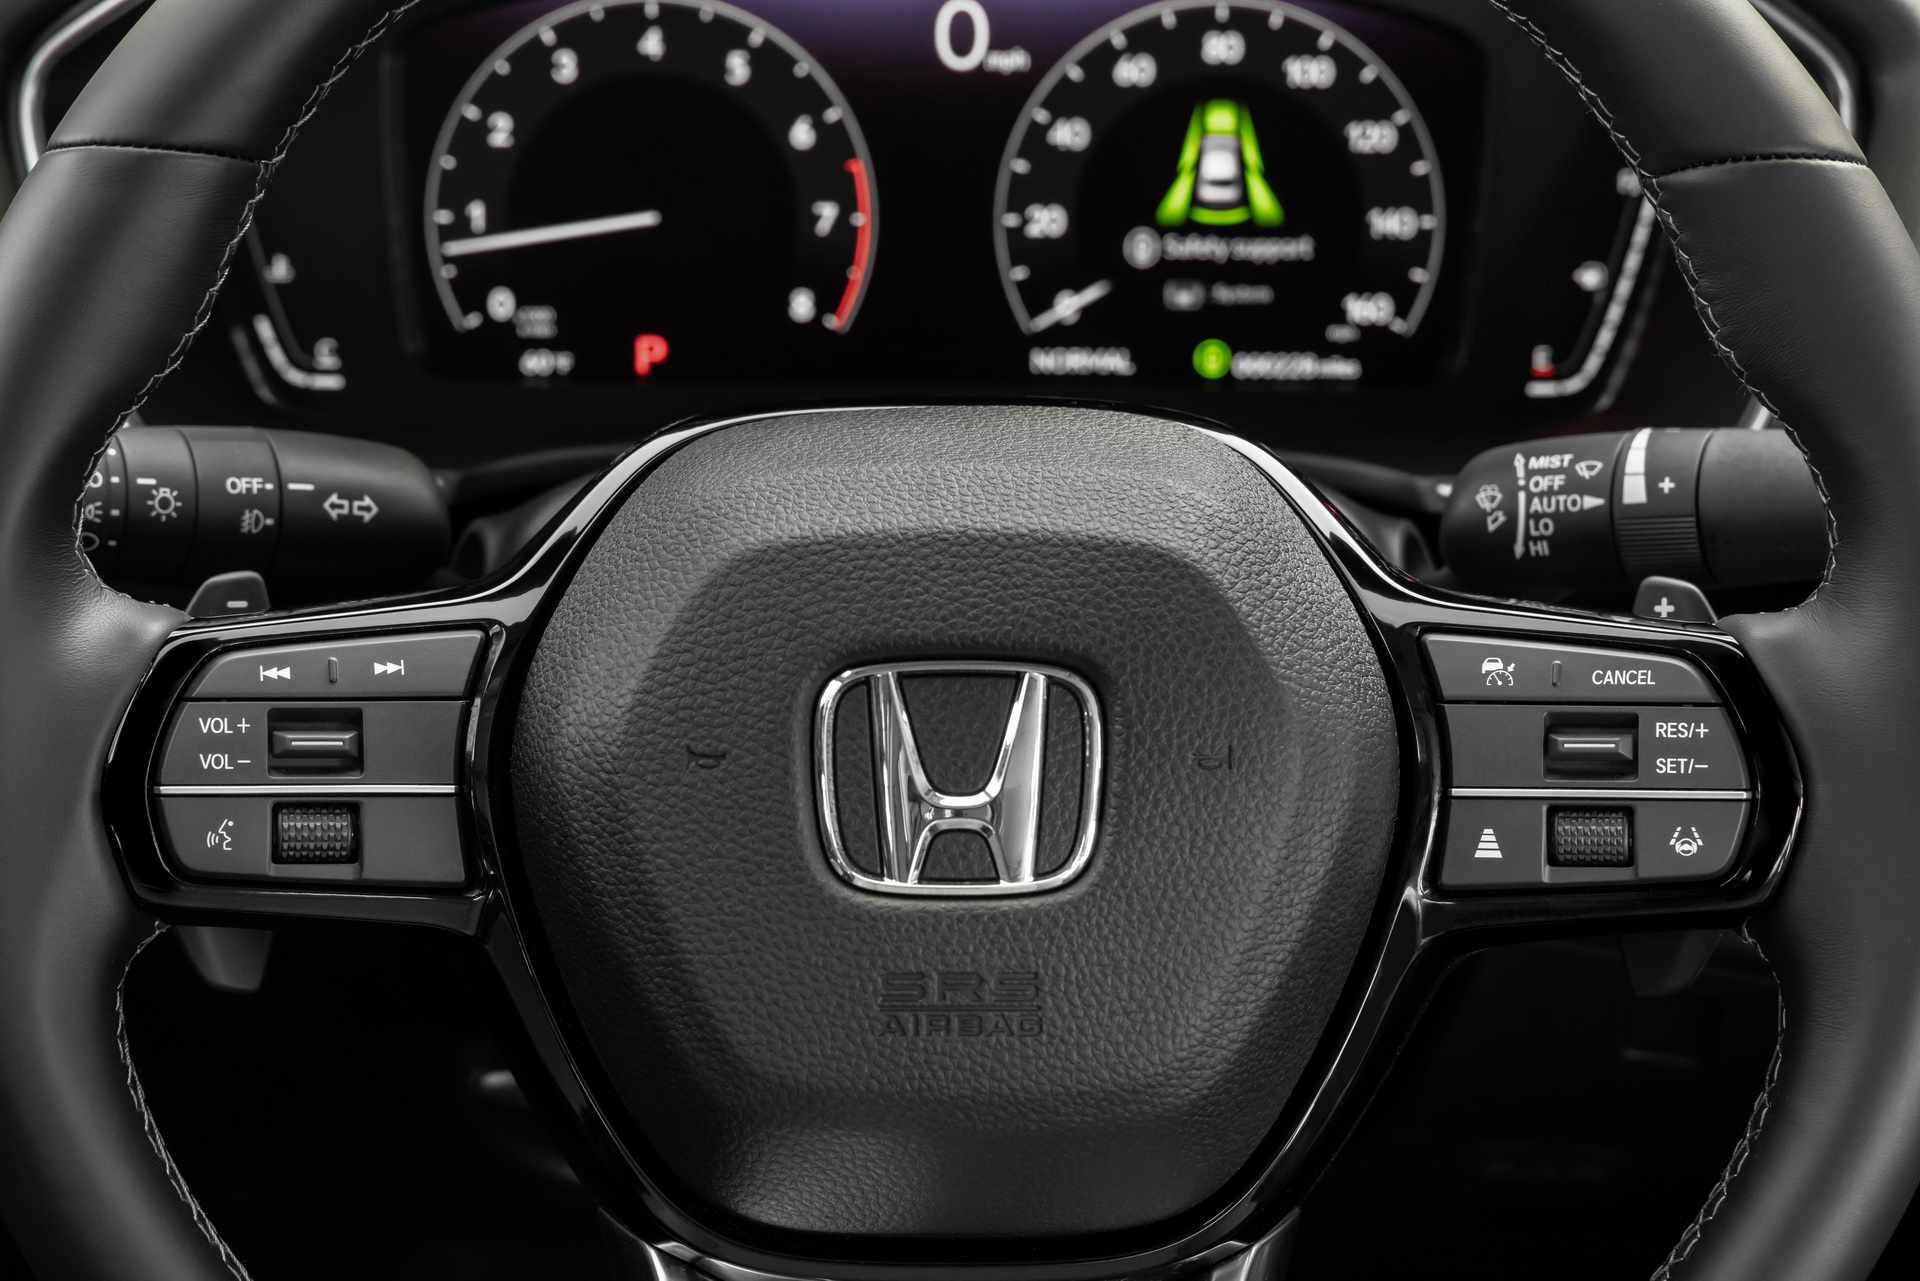 Yeni 2022 Honda Civic Sedan'ın yurt dışı fiyatları ve detaylı fotoğraflarına göz atın